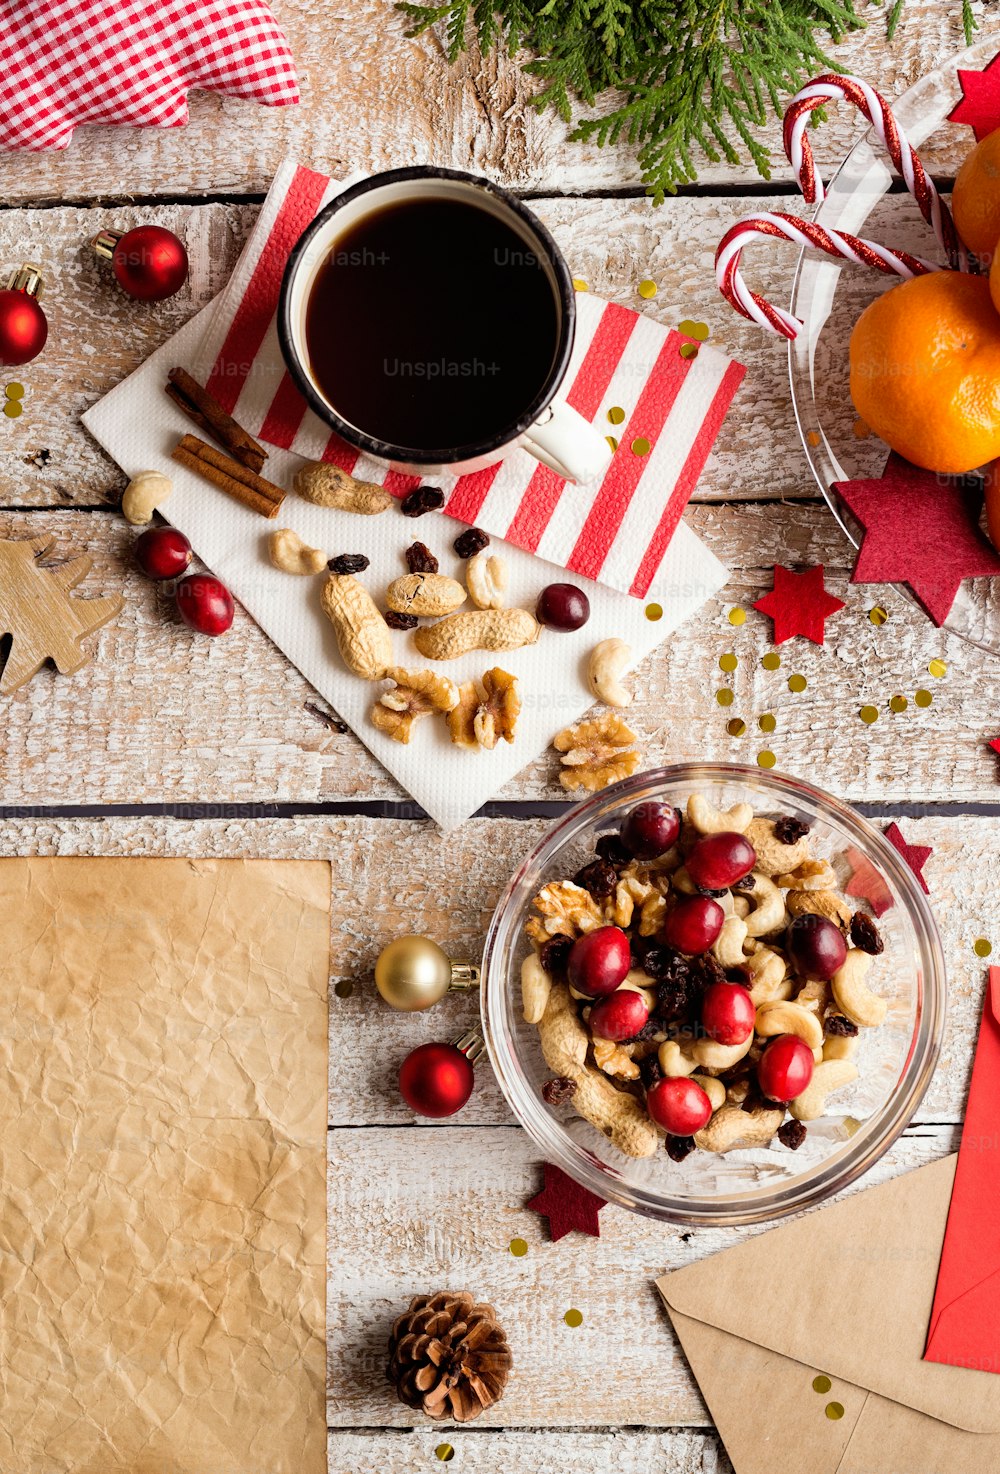 크리스마스 작곡. 말린 과일, 크랜베리, 견과류를 곁들인 그릇. 커피 한잔. 크리스마스 장식. 다양한 물건들이 테이블 위에 놓여 있다. 스튜디오 샷, 나무 배경입니다. 복사 공간.